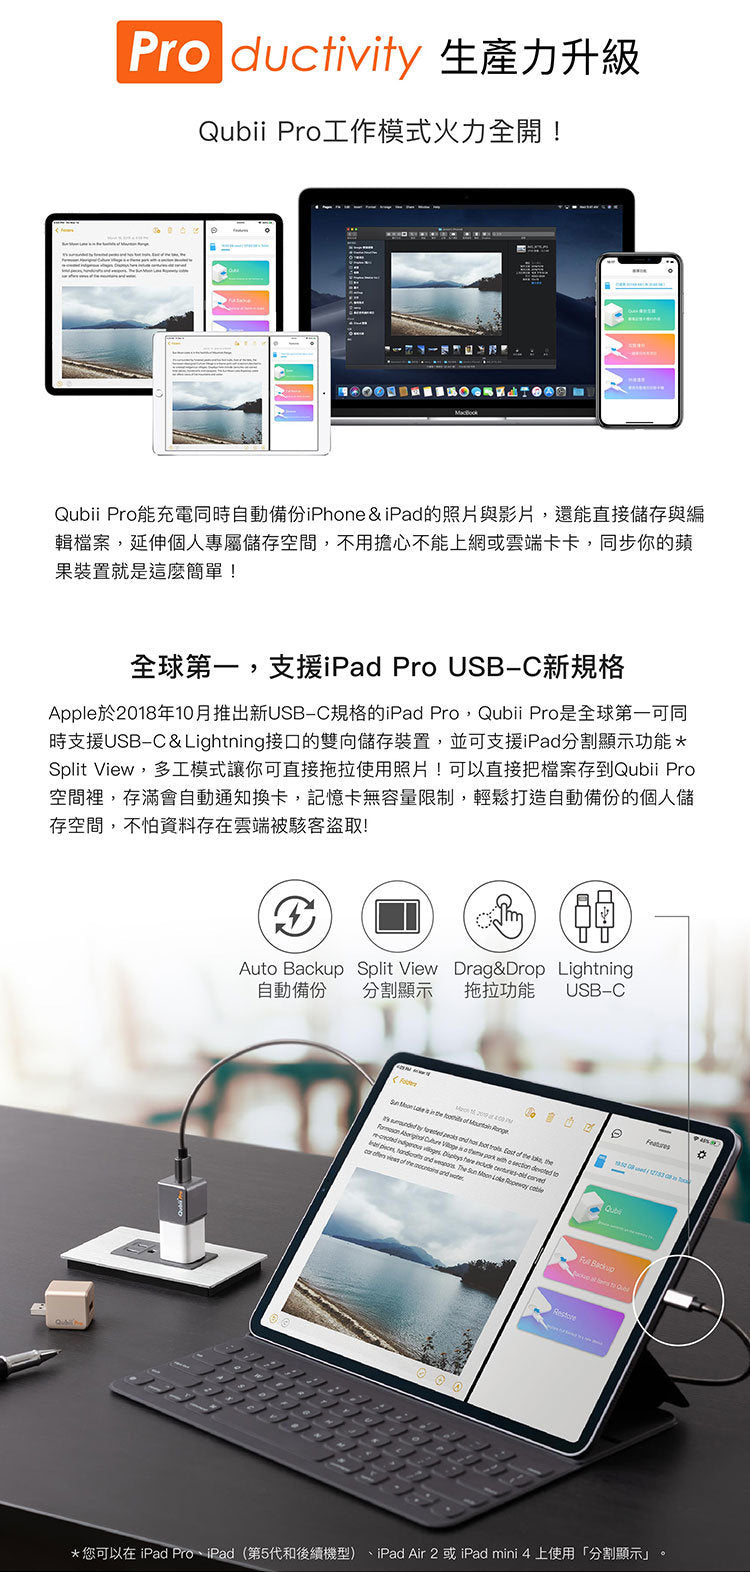 Maktar - Qubii Pro Backup Tofu Professional Edition (without memory card) - Rose Gold